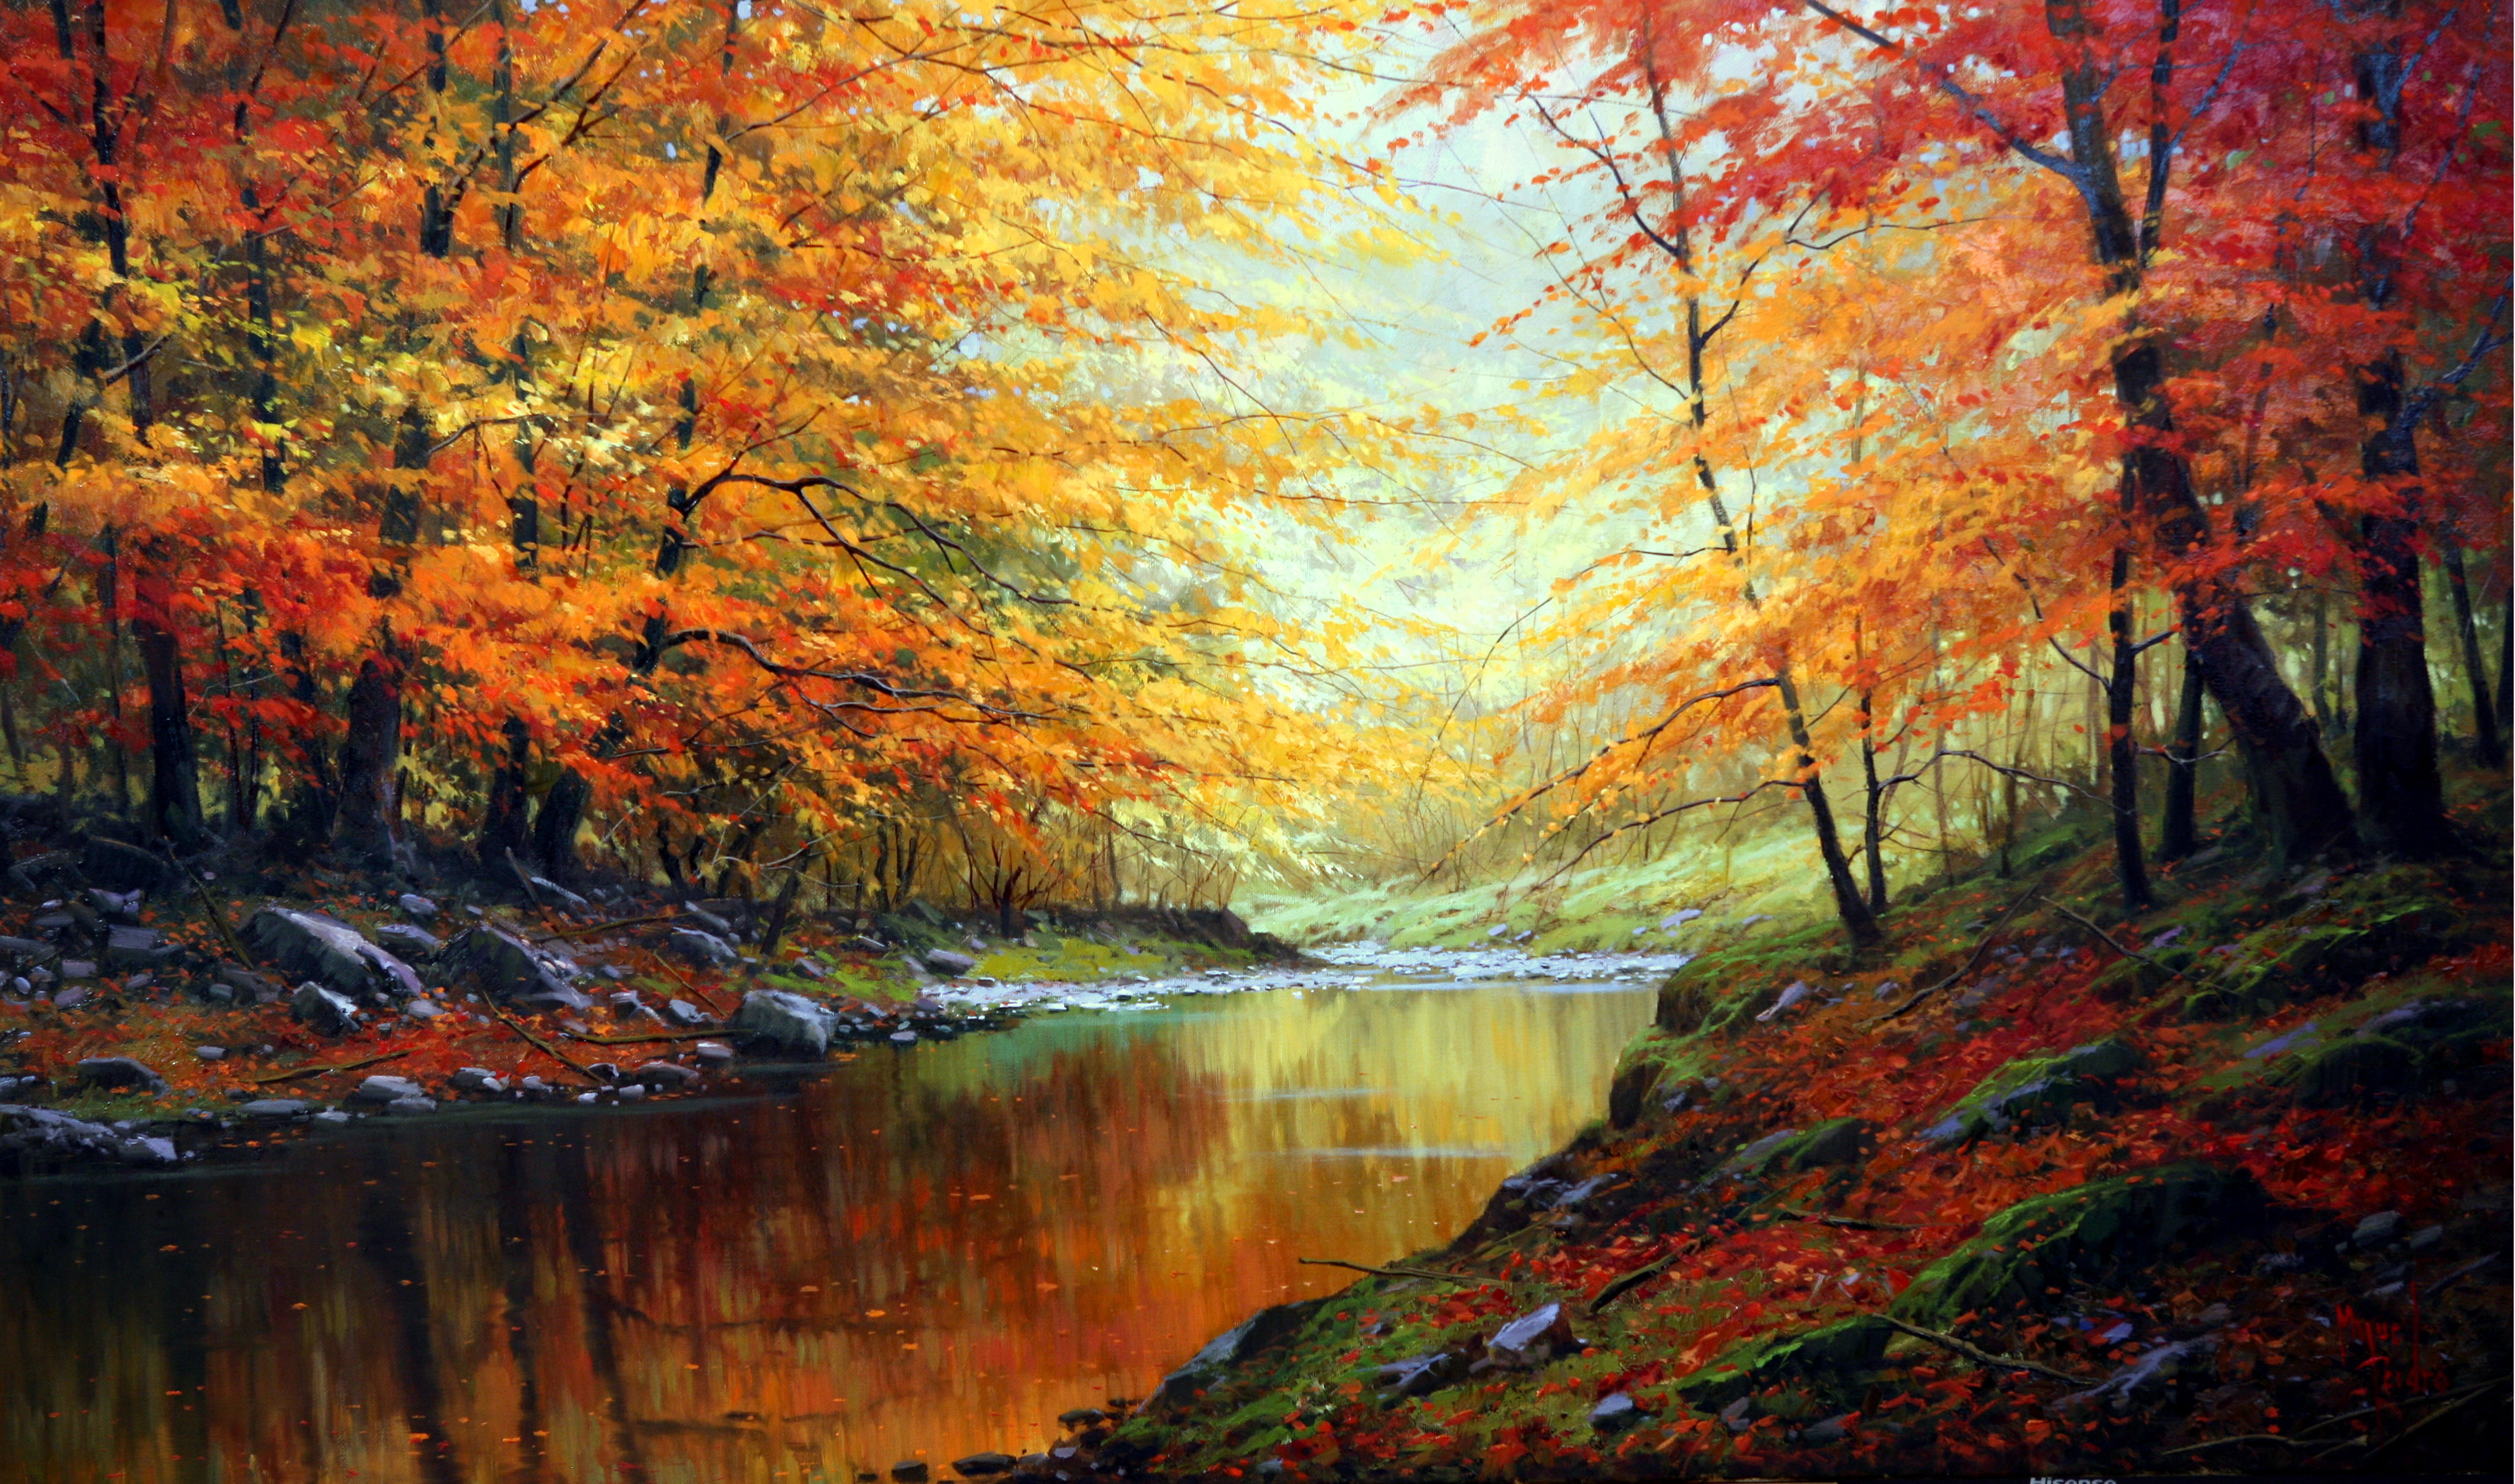 西班牙风景画大师米格尔·佩德罗个人画展 满屏对深秋的爱